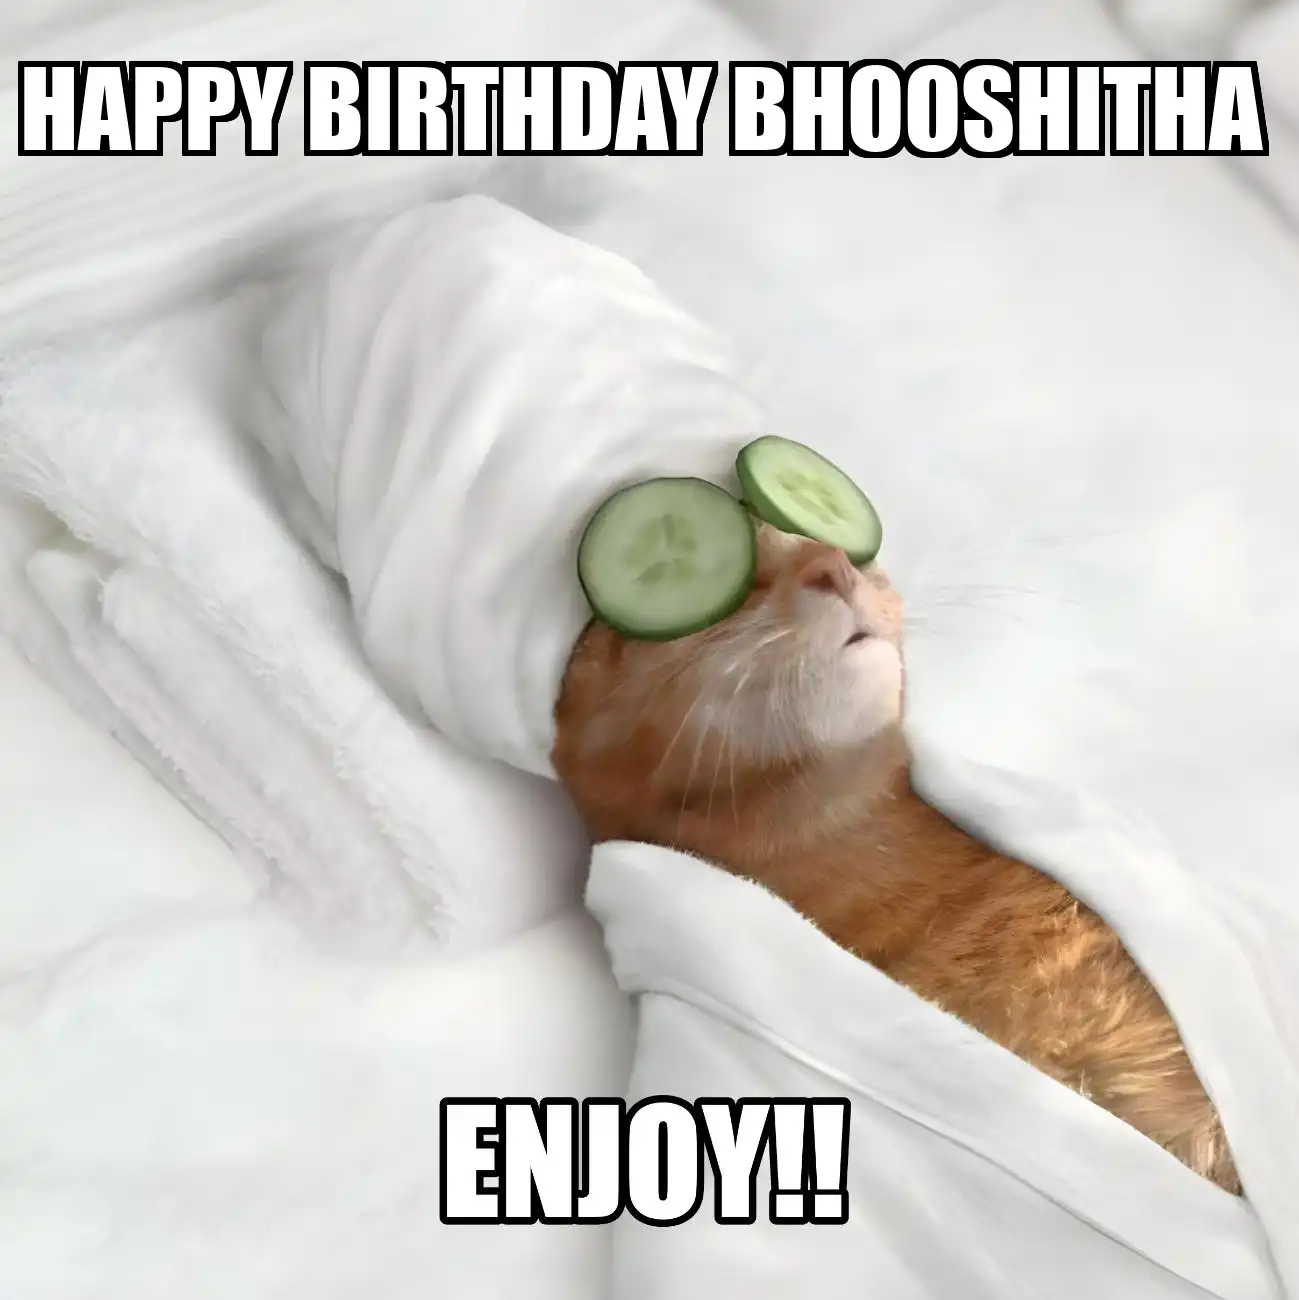 Happy Birthday Bhooshitha Enjoy Cat Meme